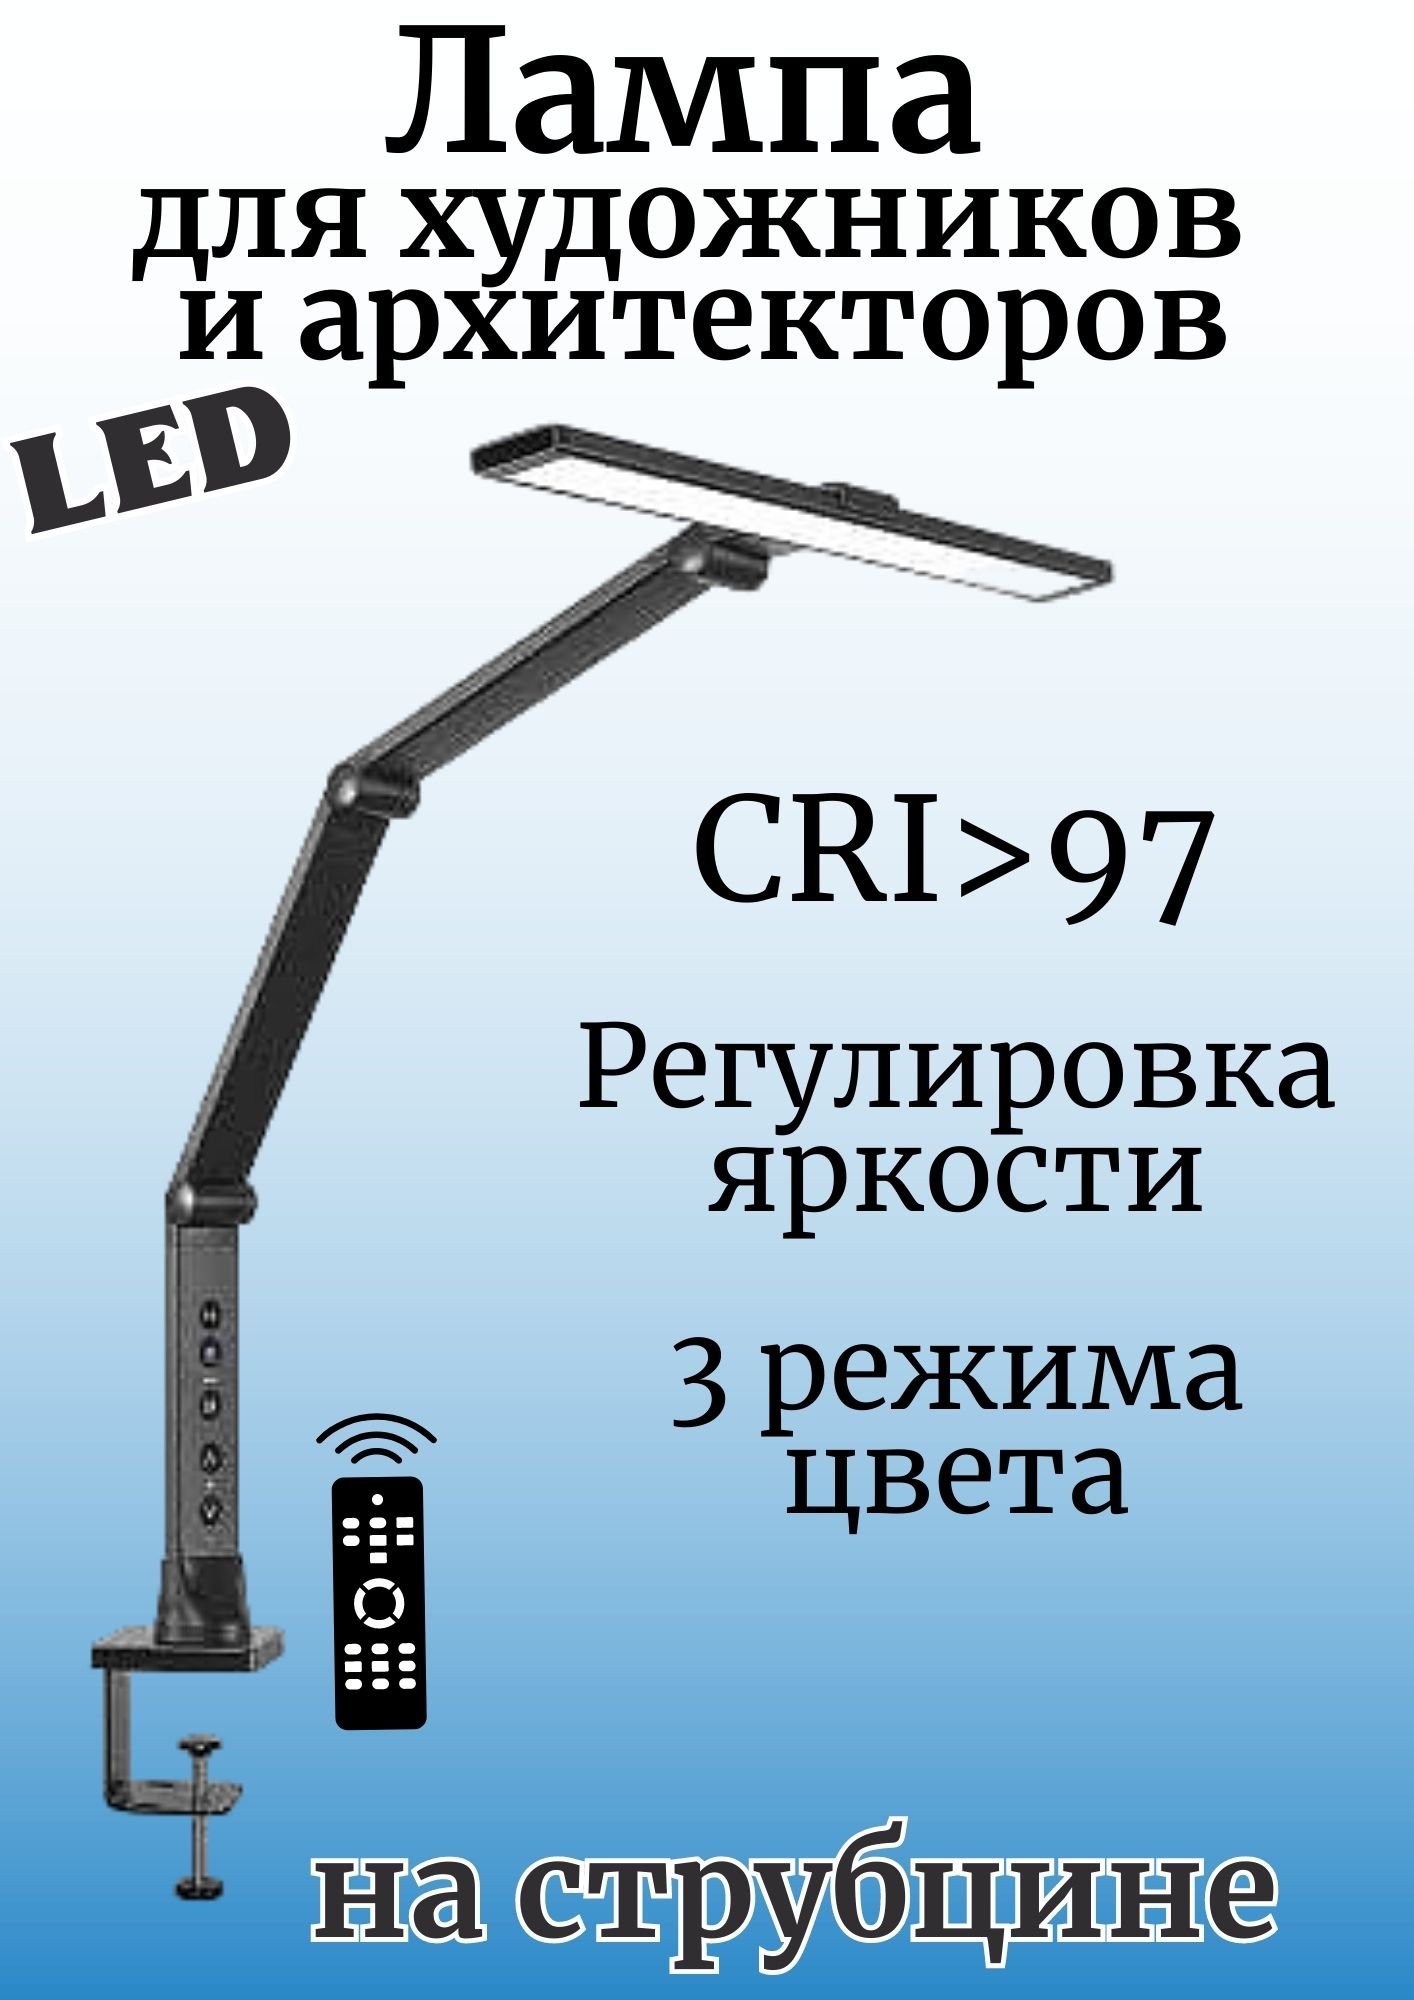 Настольная светодиодная лампа SoulArt, MSP-03A для художников и архитекторов CRI 97, 223684 